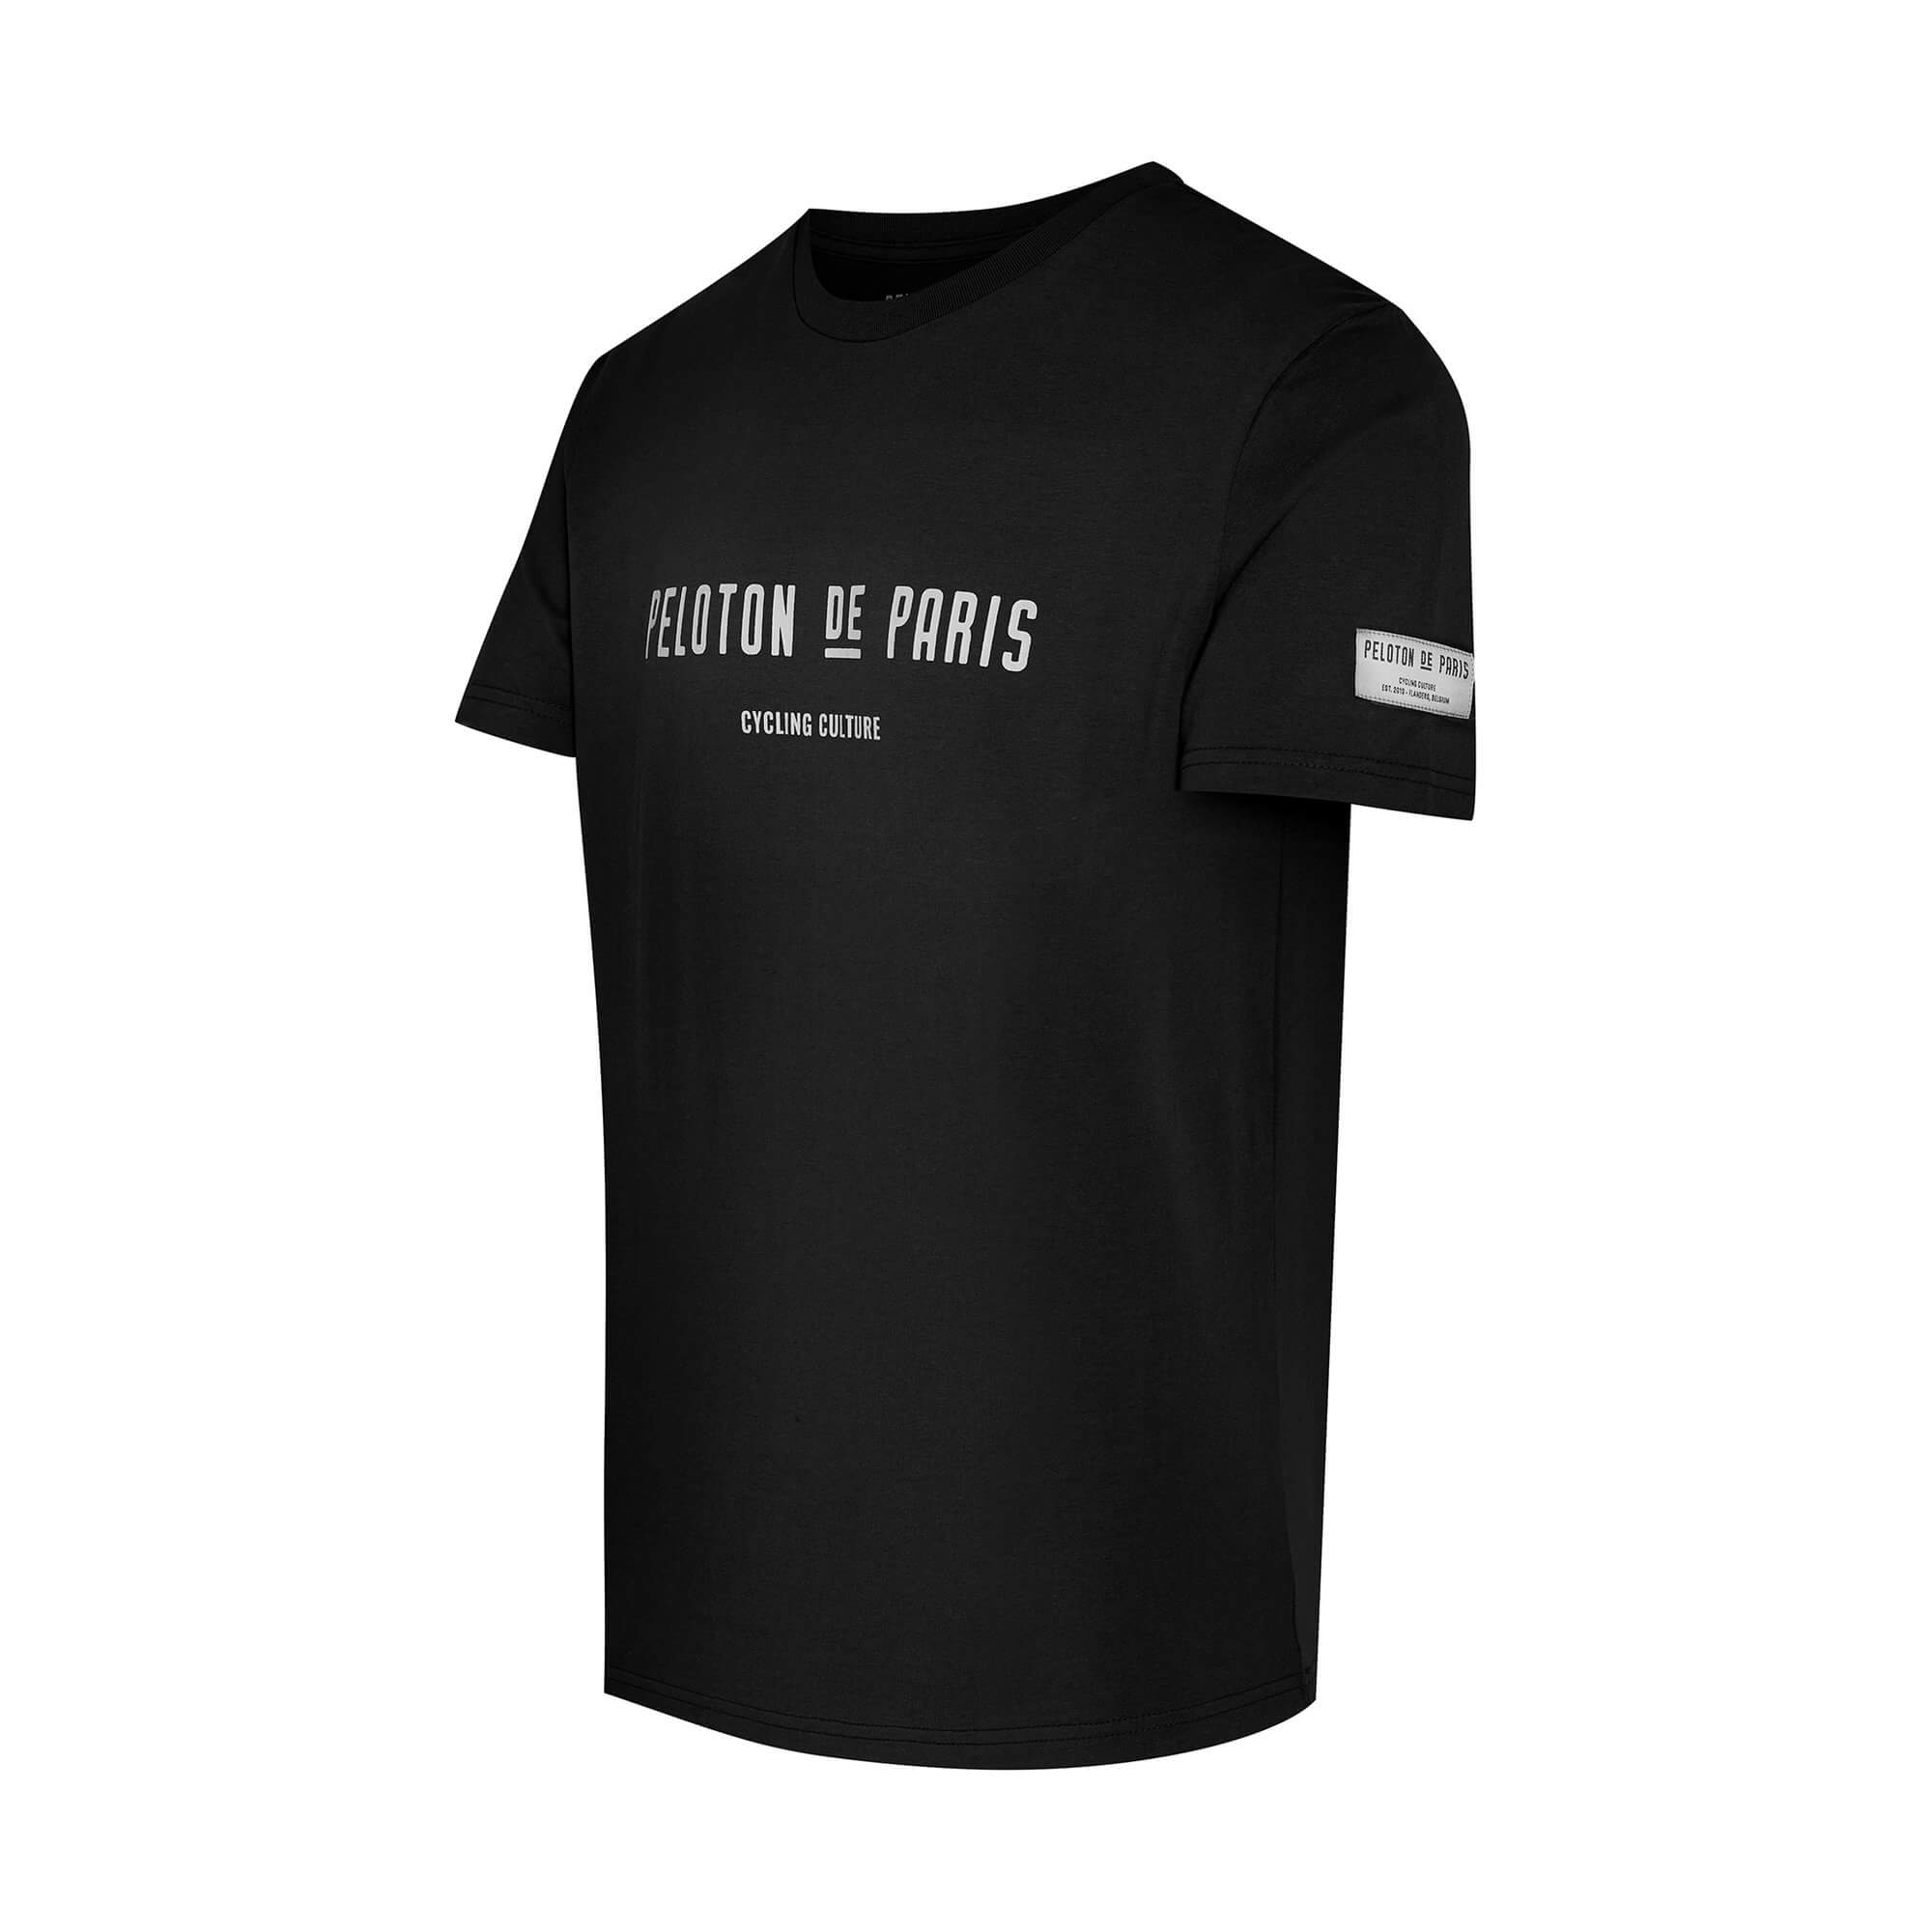 Men's Cycling Culture T-shirt - Black